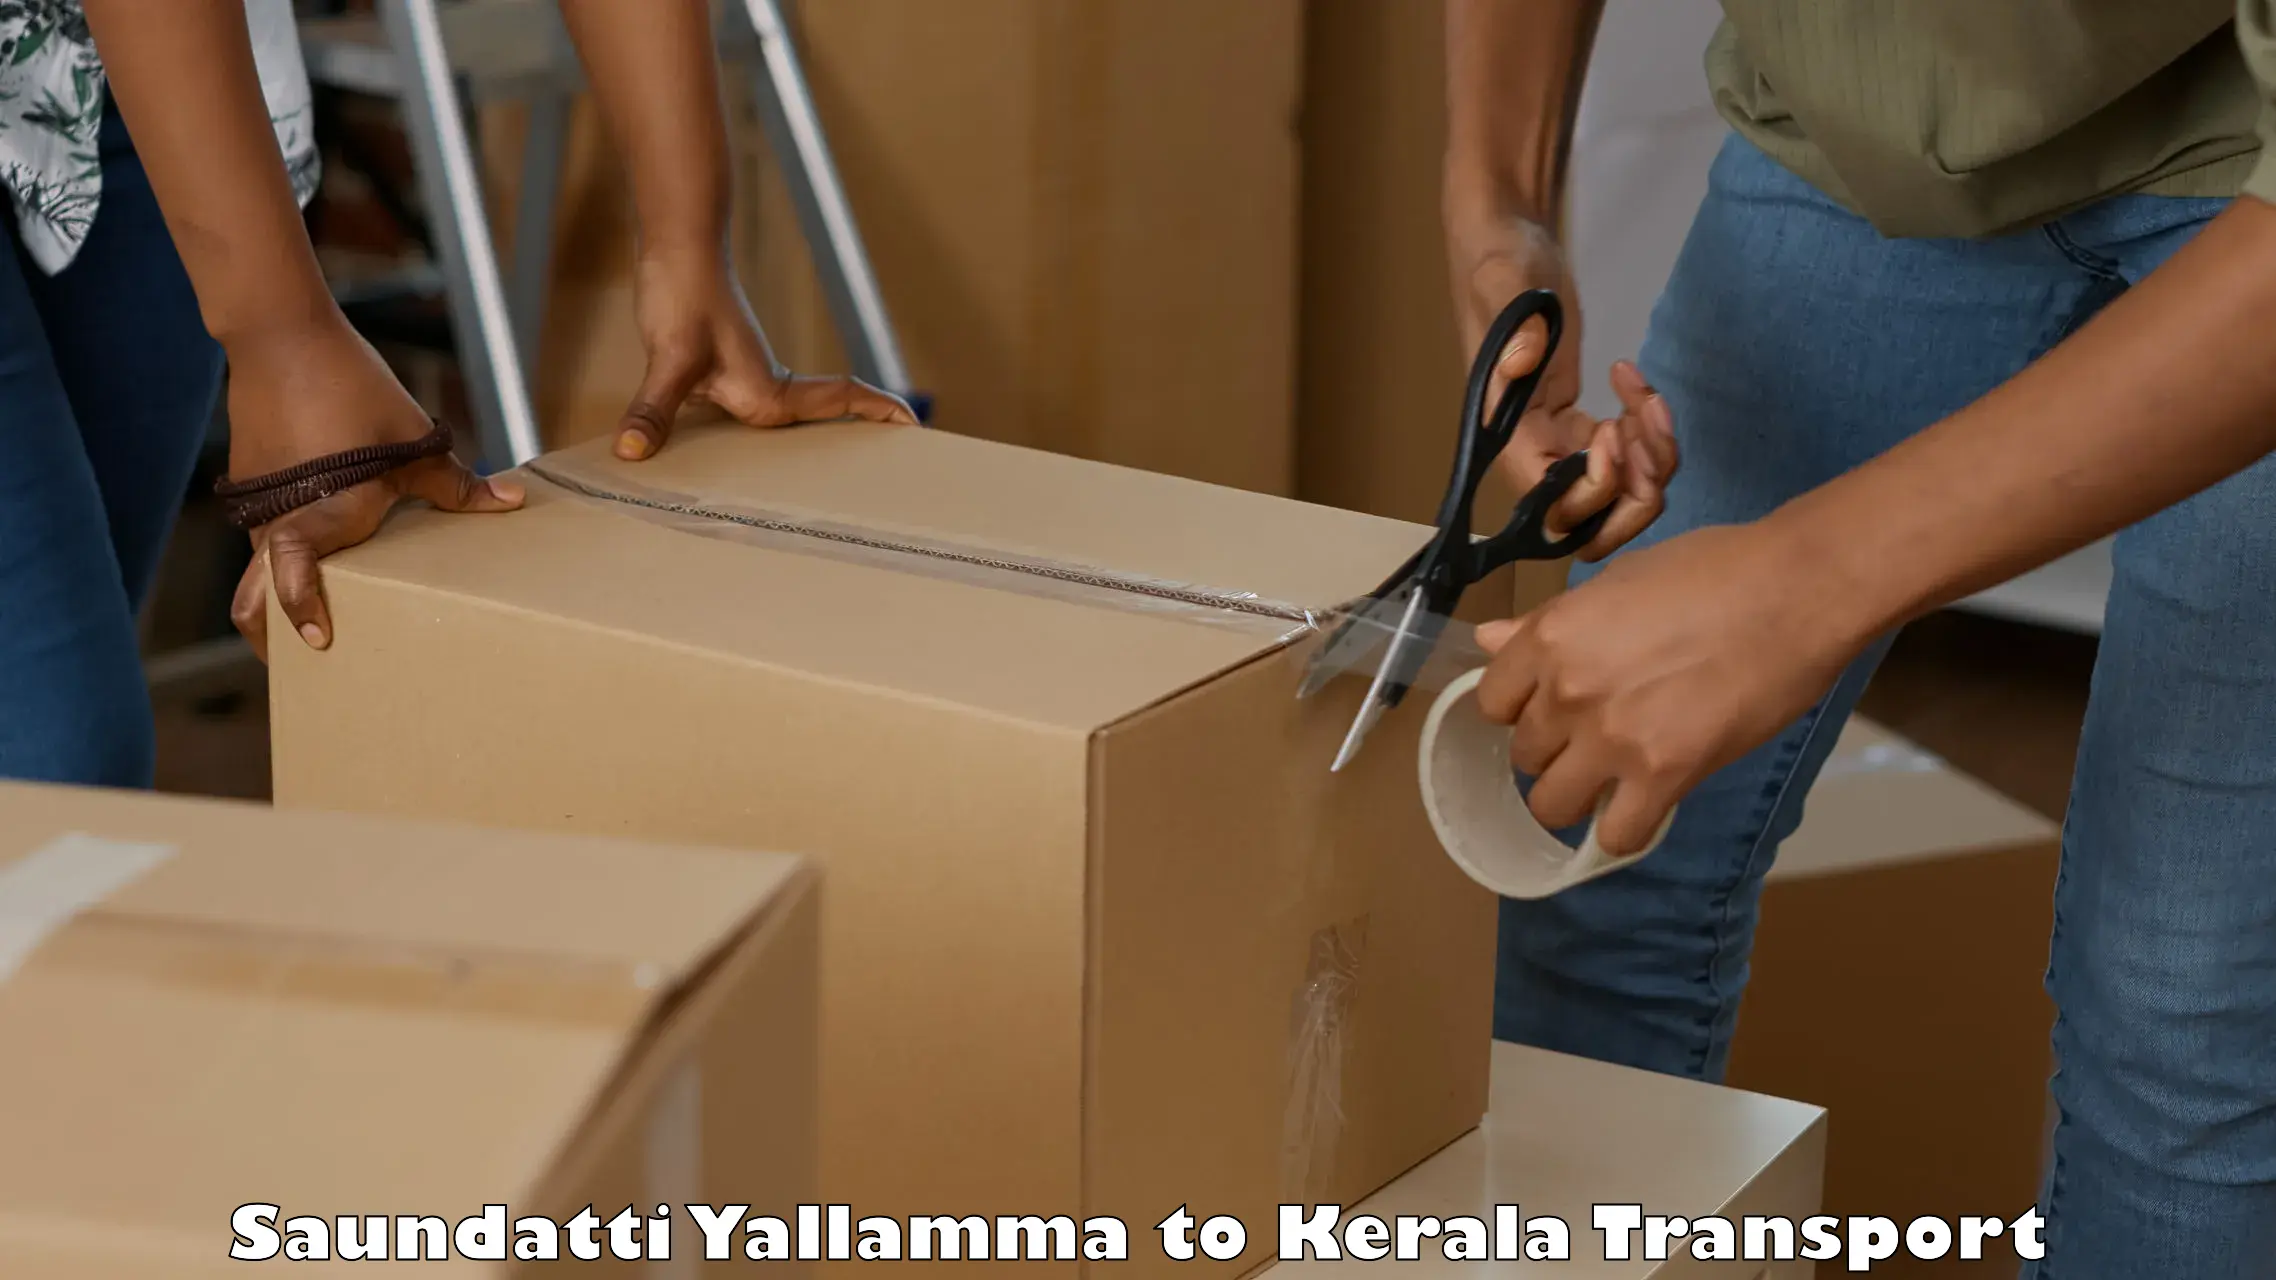 Transportation services Saundatti Yallamma to Idukki